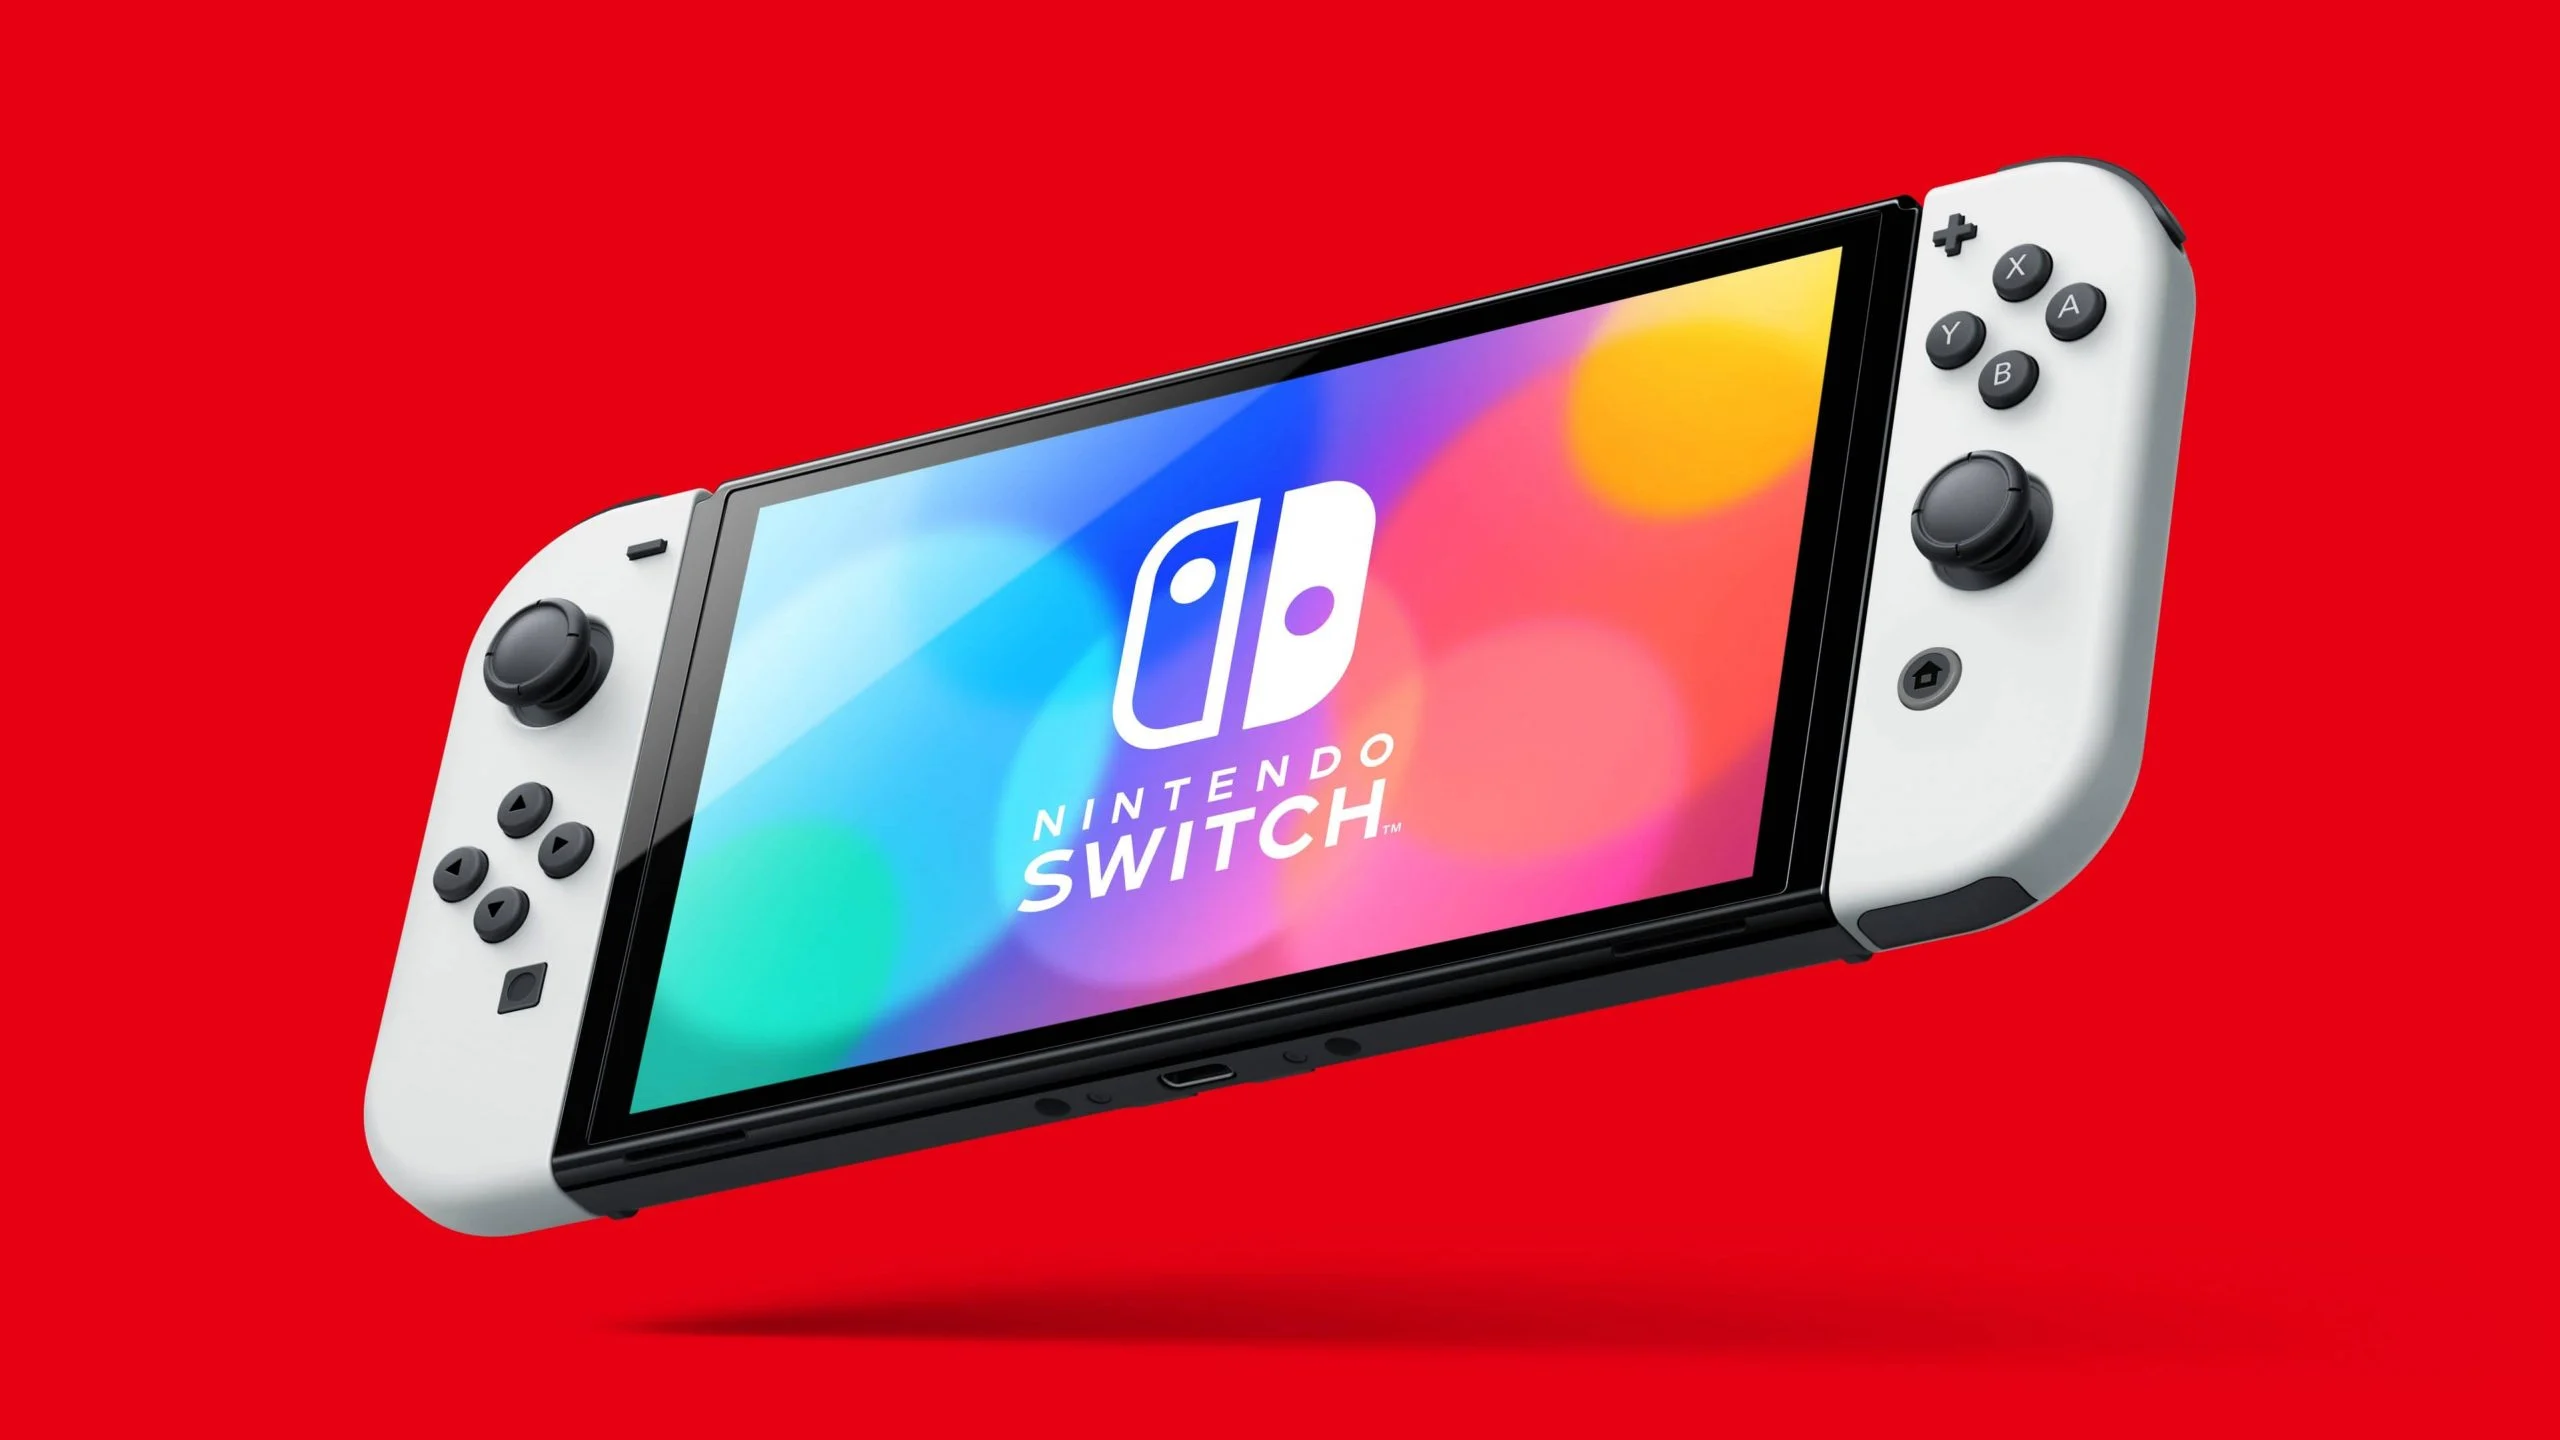 Nintendo Switch : une nouvelle mise à jour disponible, voici ce qu'elle corrige